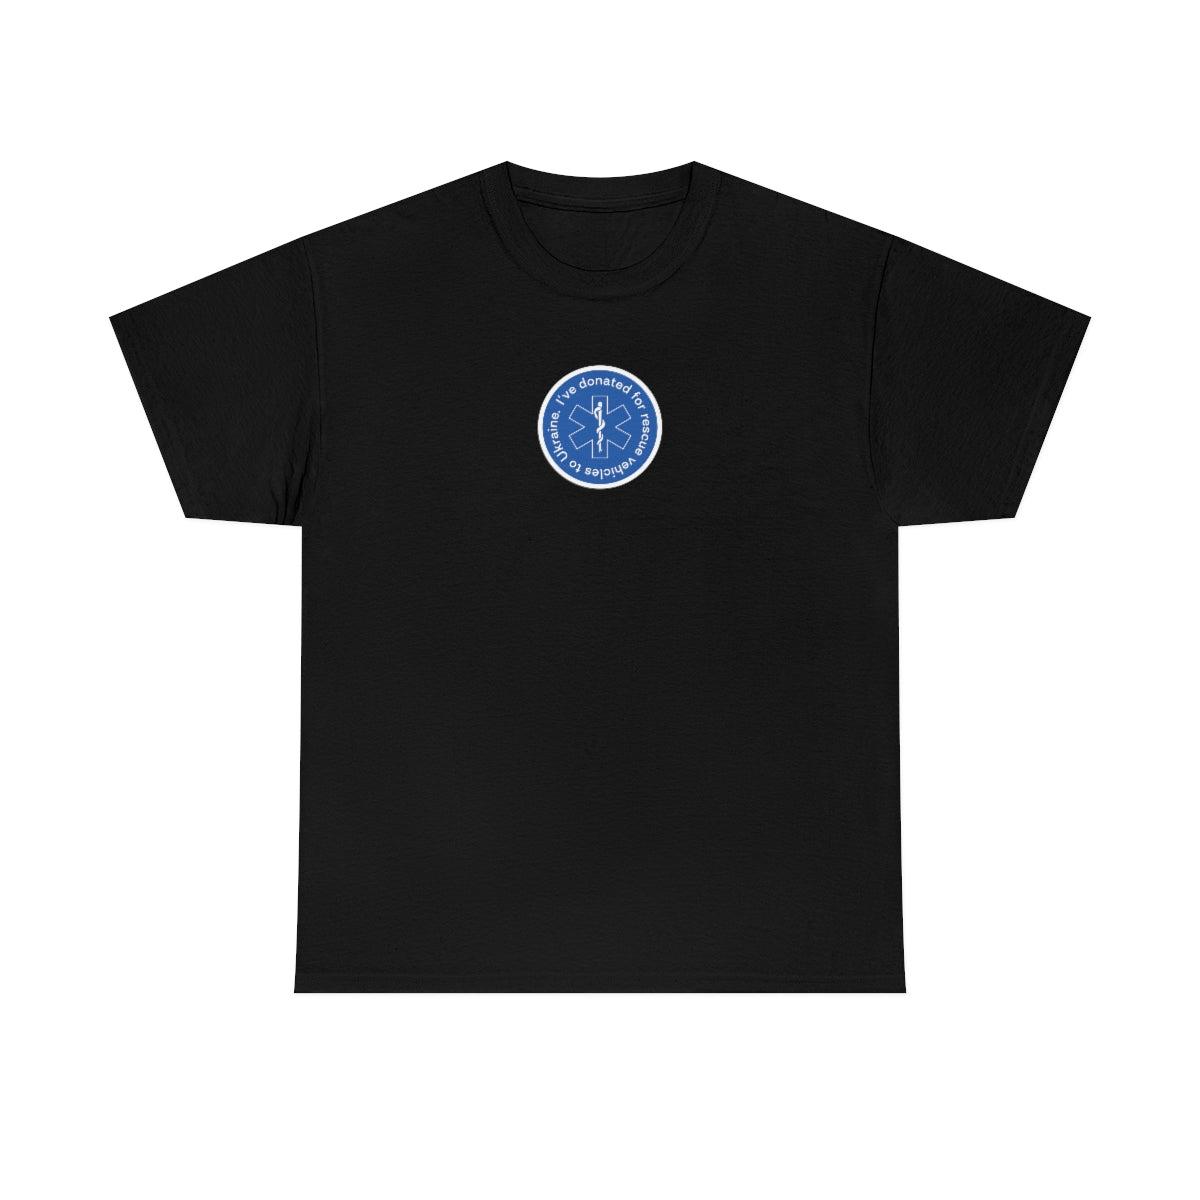 Gespendet minimalistisch - Unisex T-Shirt